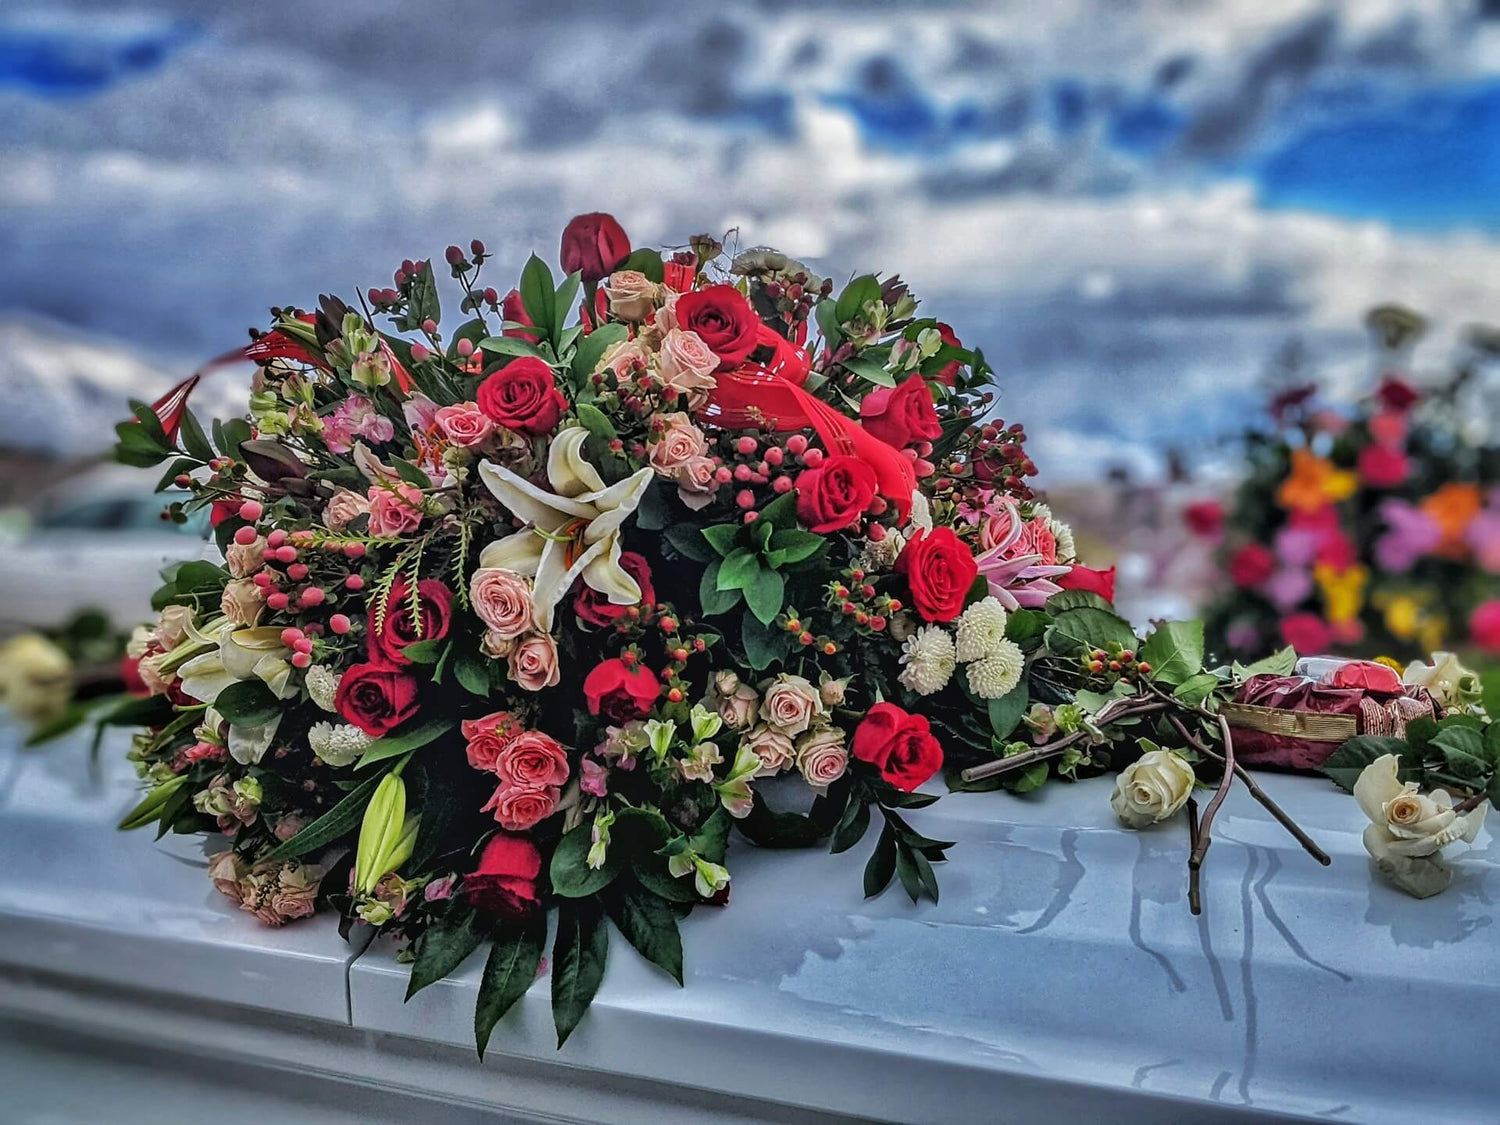 A bouquet of flowers on a casket